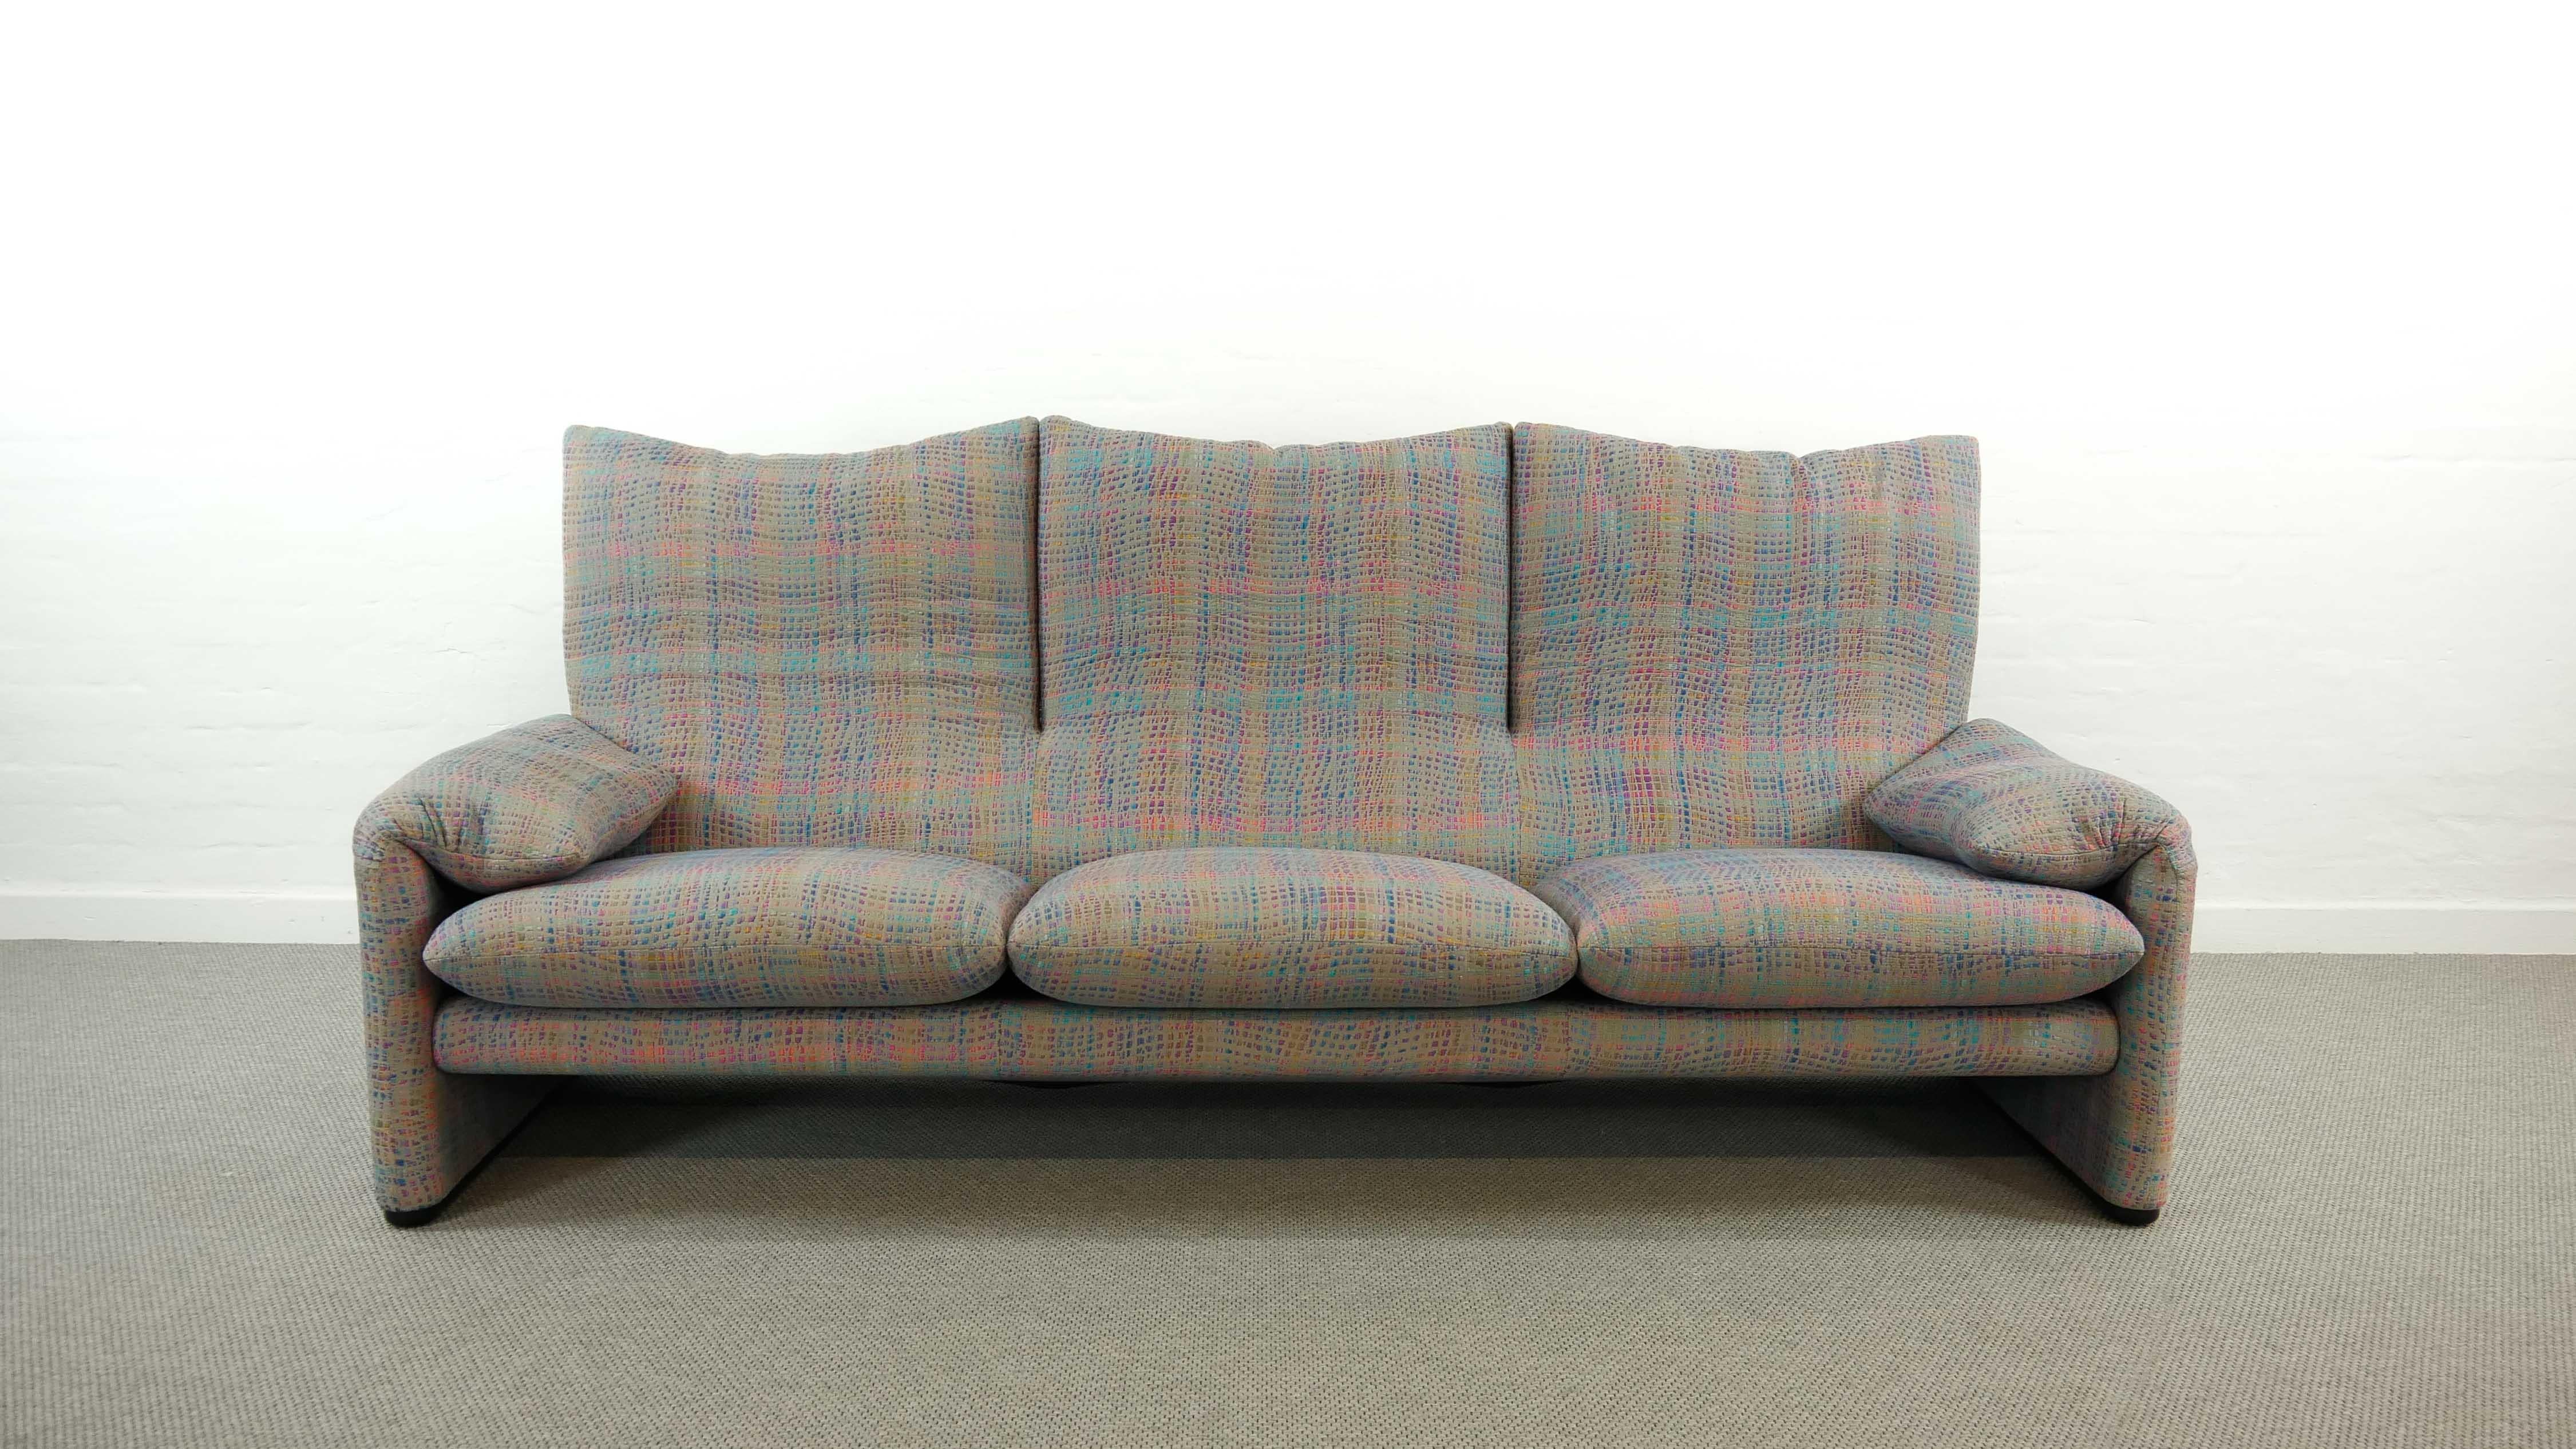 Modern Maralunga 3-Seat Sofa by Vico Magistretti for Cassina in Grey-Multicolore Fabric